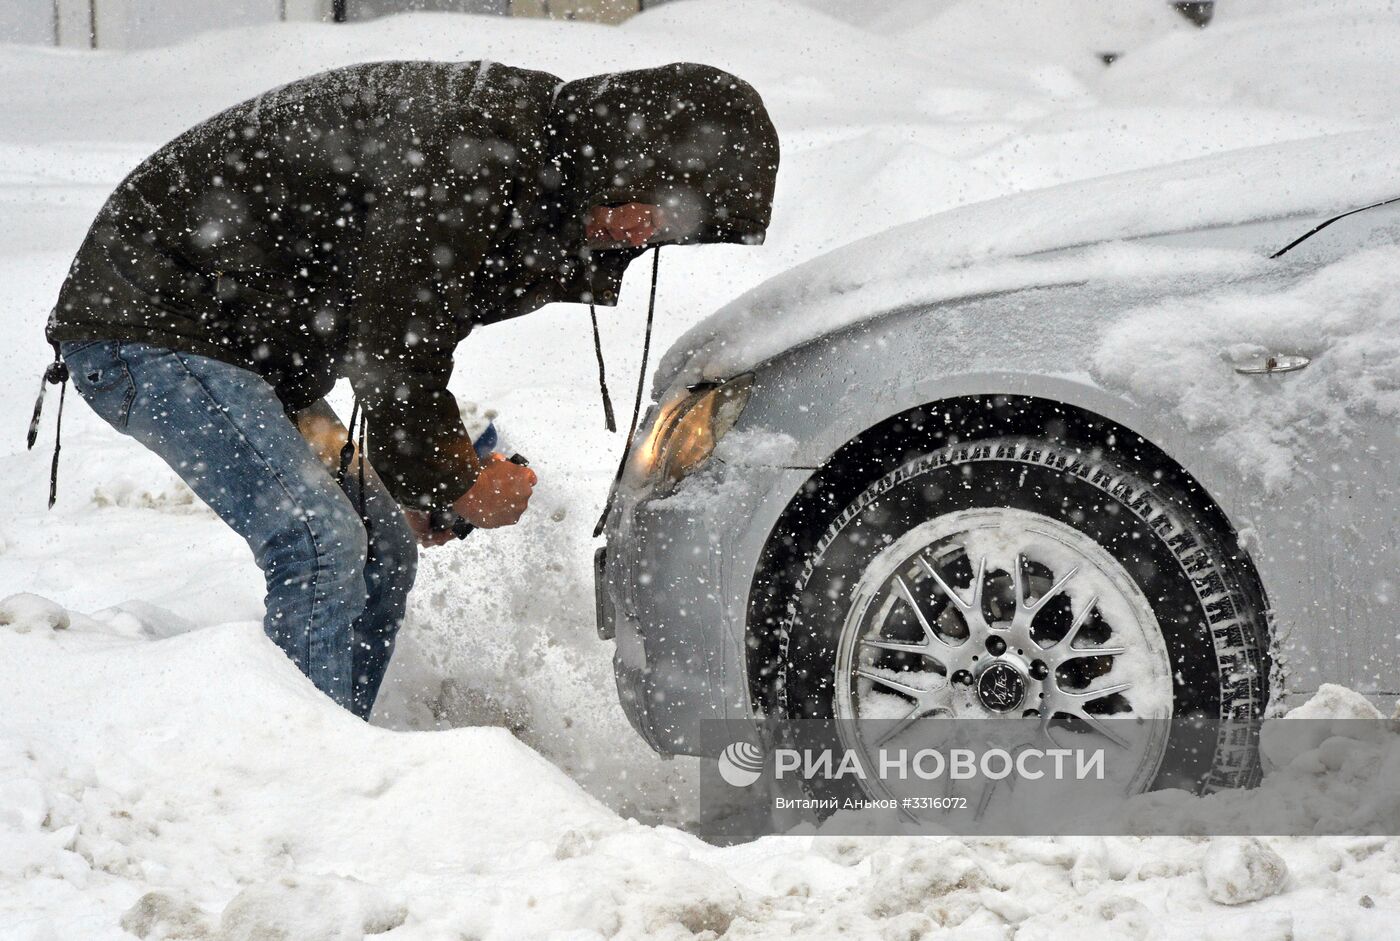 Снегопад во Владивостоке